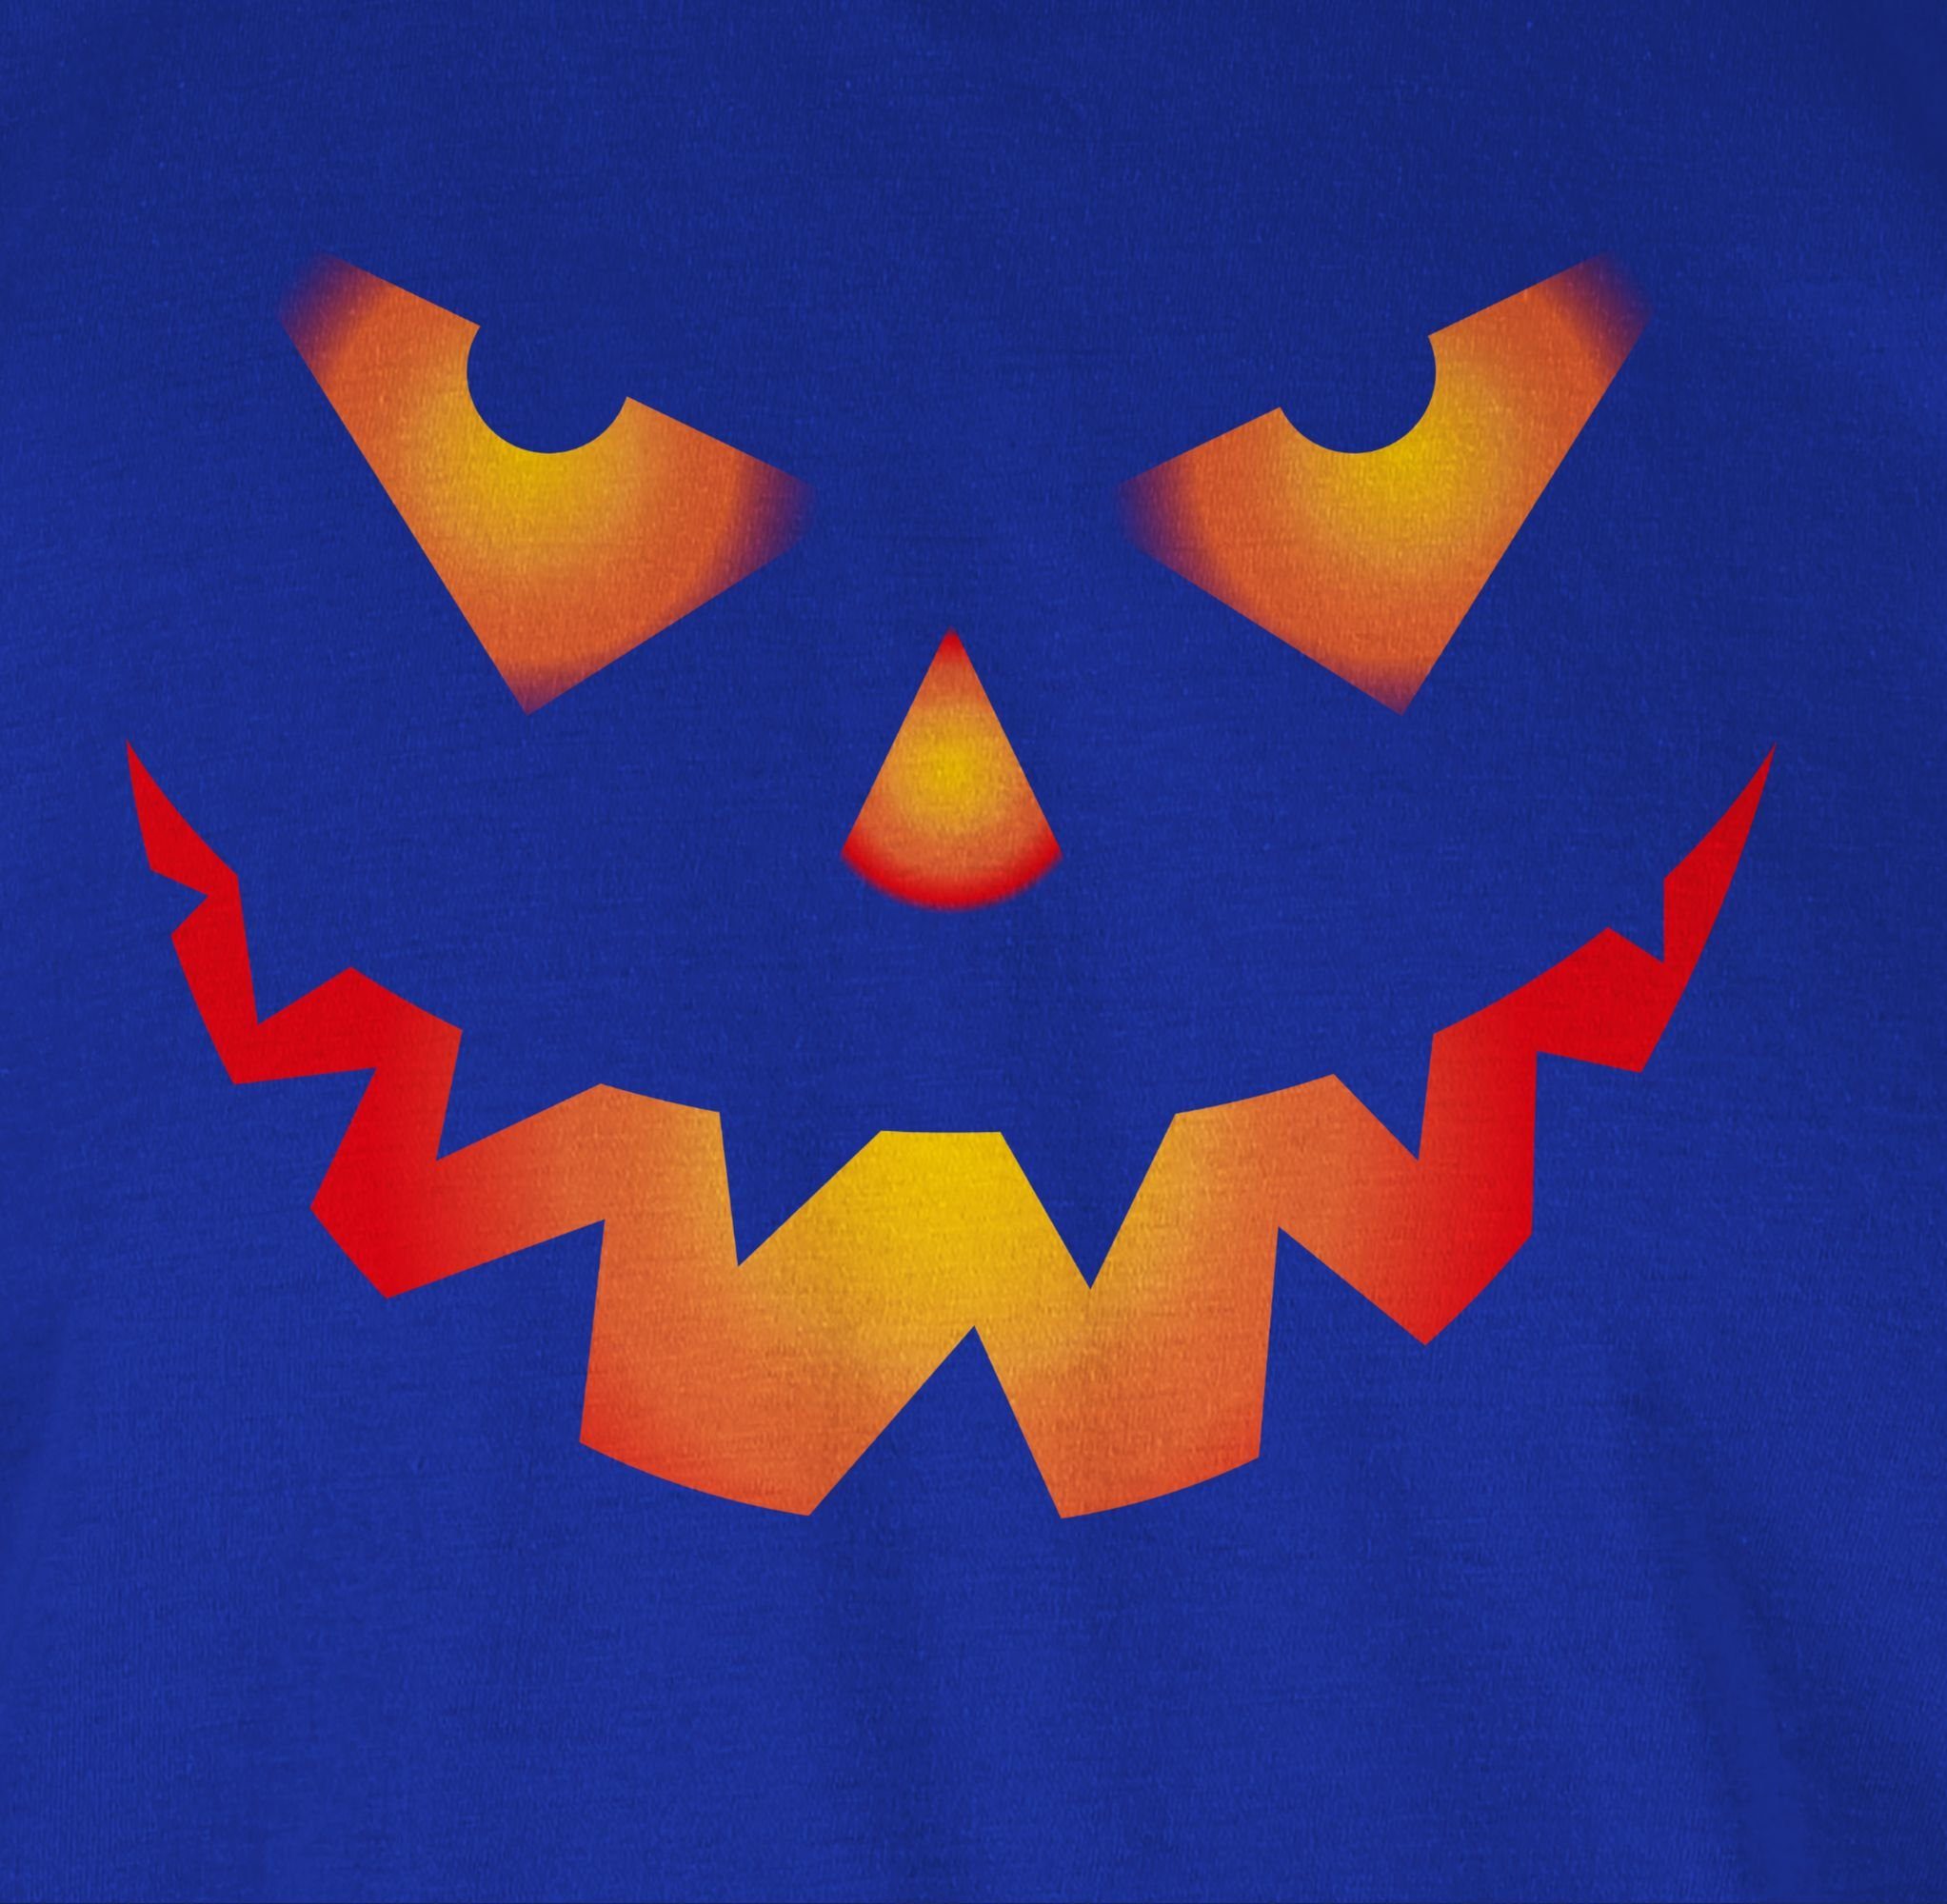 Kostüme Royalblau Gruselig Gruseliger 3 Böse Halloween Kürbis Shirtracer Herren Rundhalsshirt Gesicht Halloween Kürbisgesicht